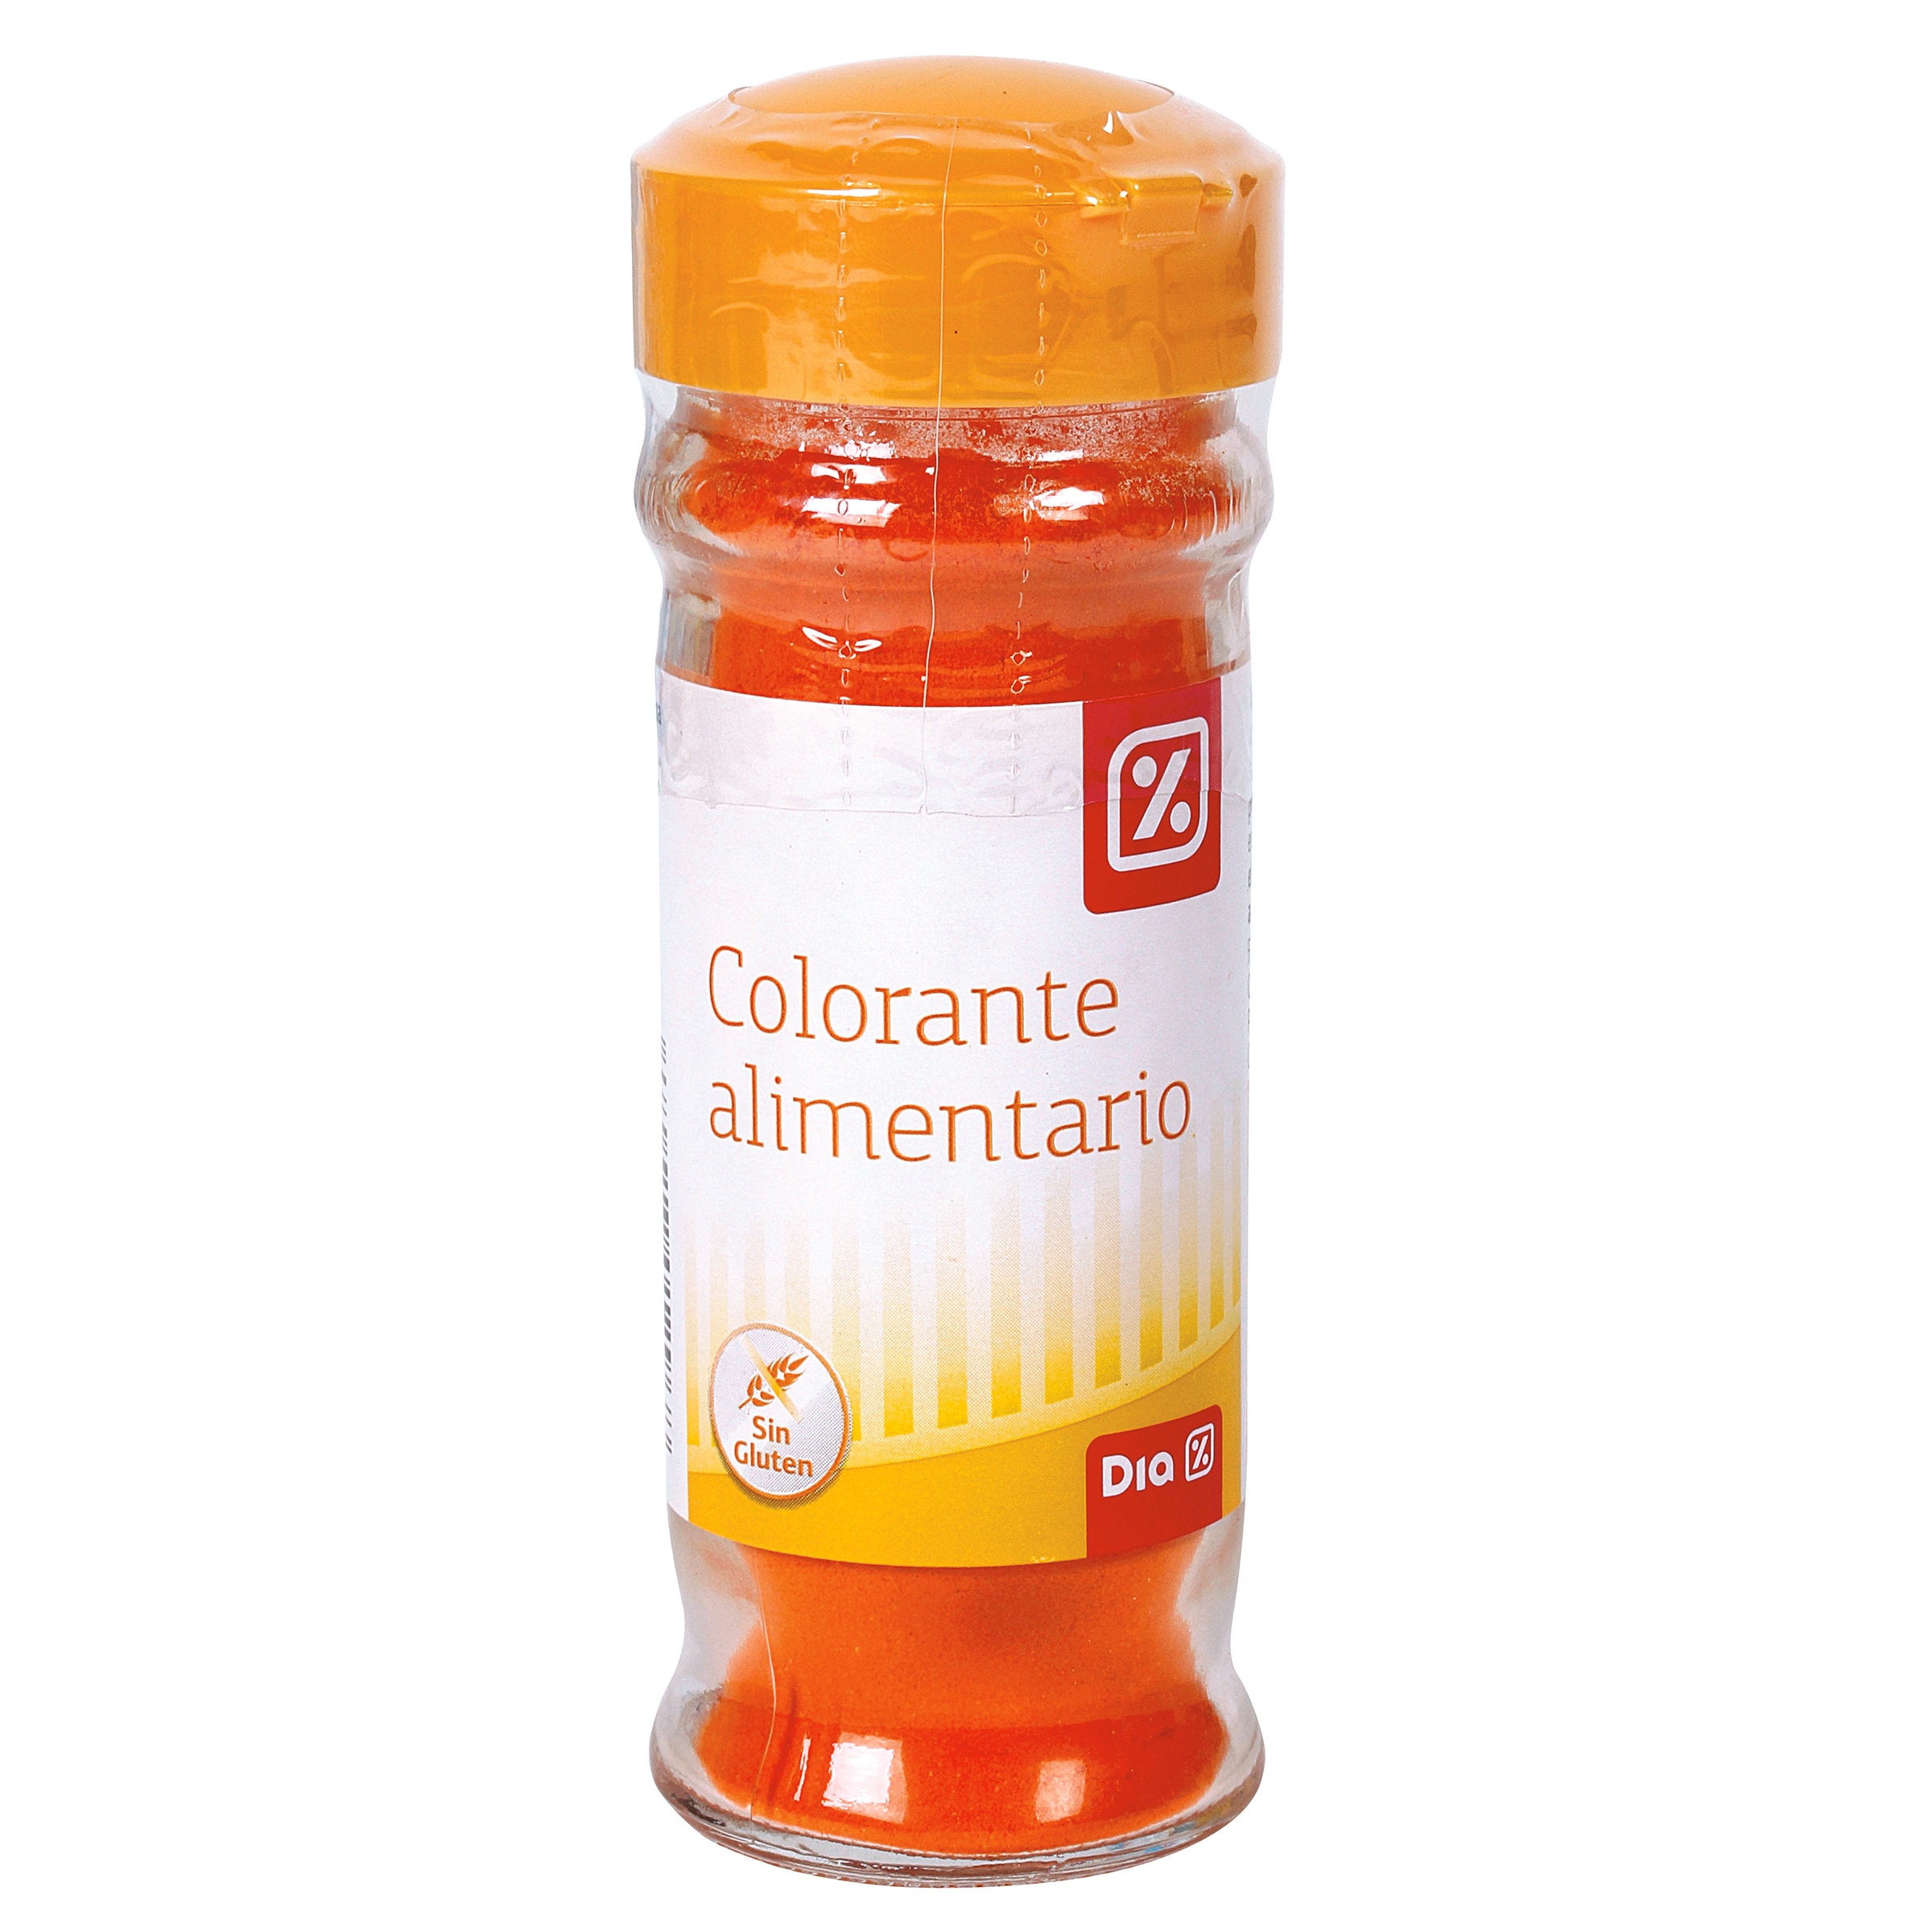 Colorante alimentario Dia frasco 60 g - Supermercados DIA